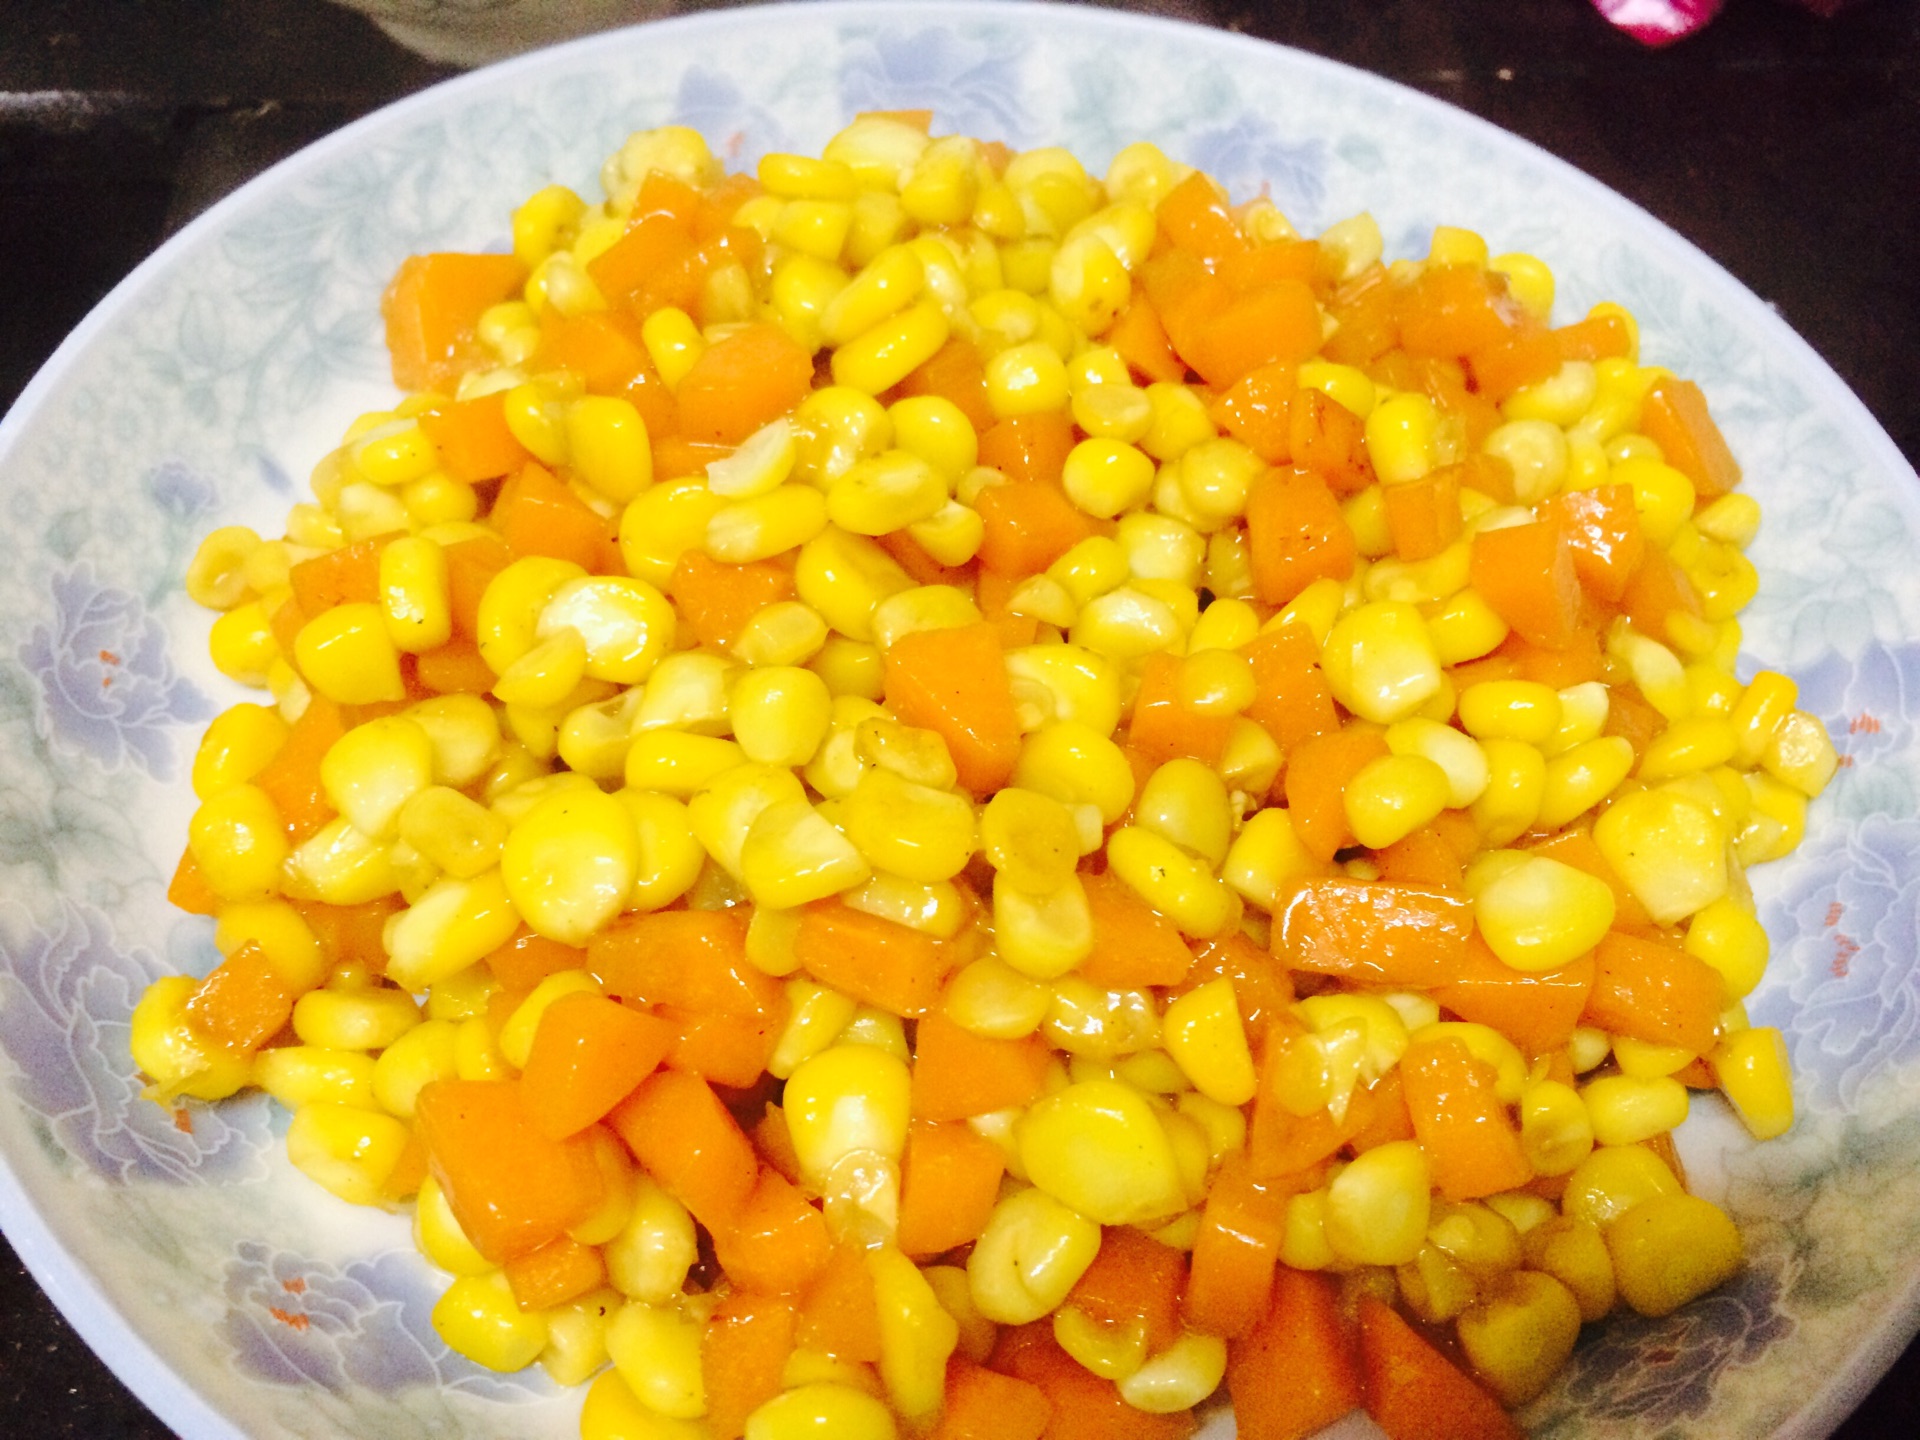 胡萝卜炒豆子,胡萝卜炒豆子的家常做法 - 美食杰胡萝卜炒豆子做法大全